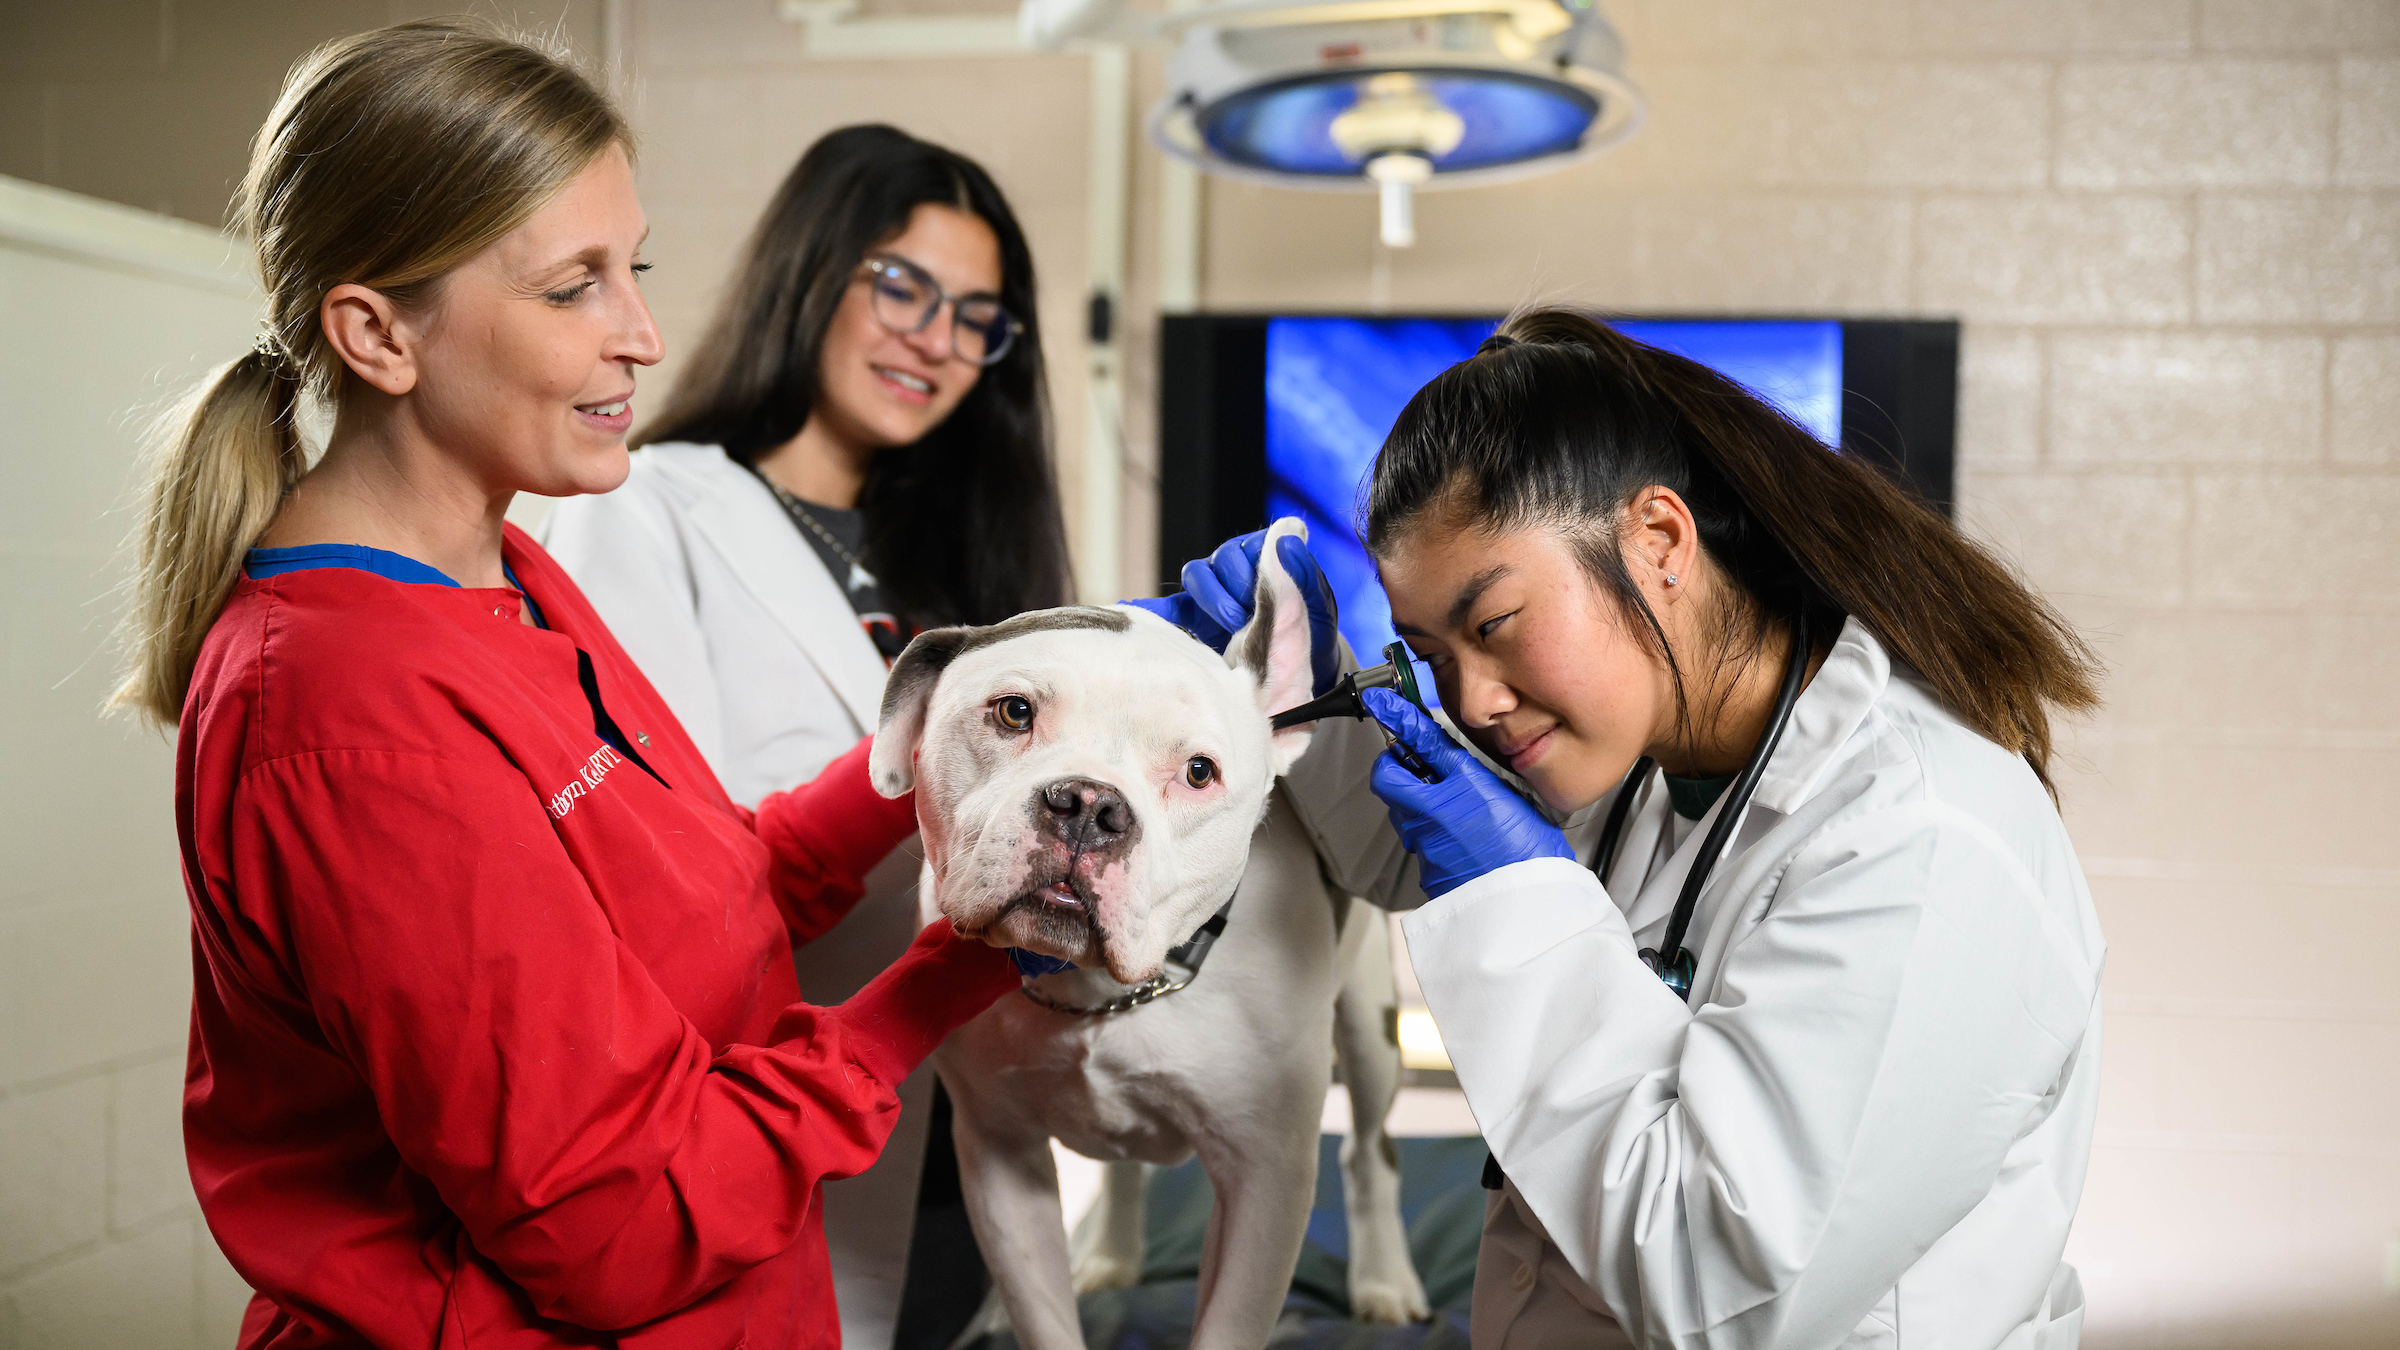 A professor explains how to examine a dog's ear.